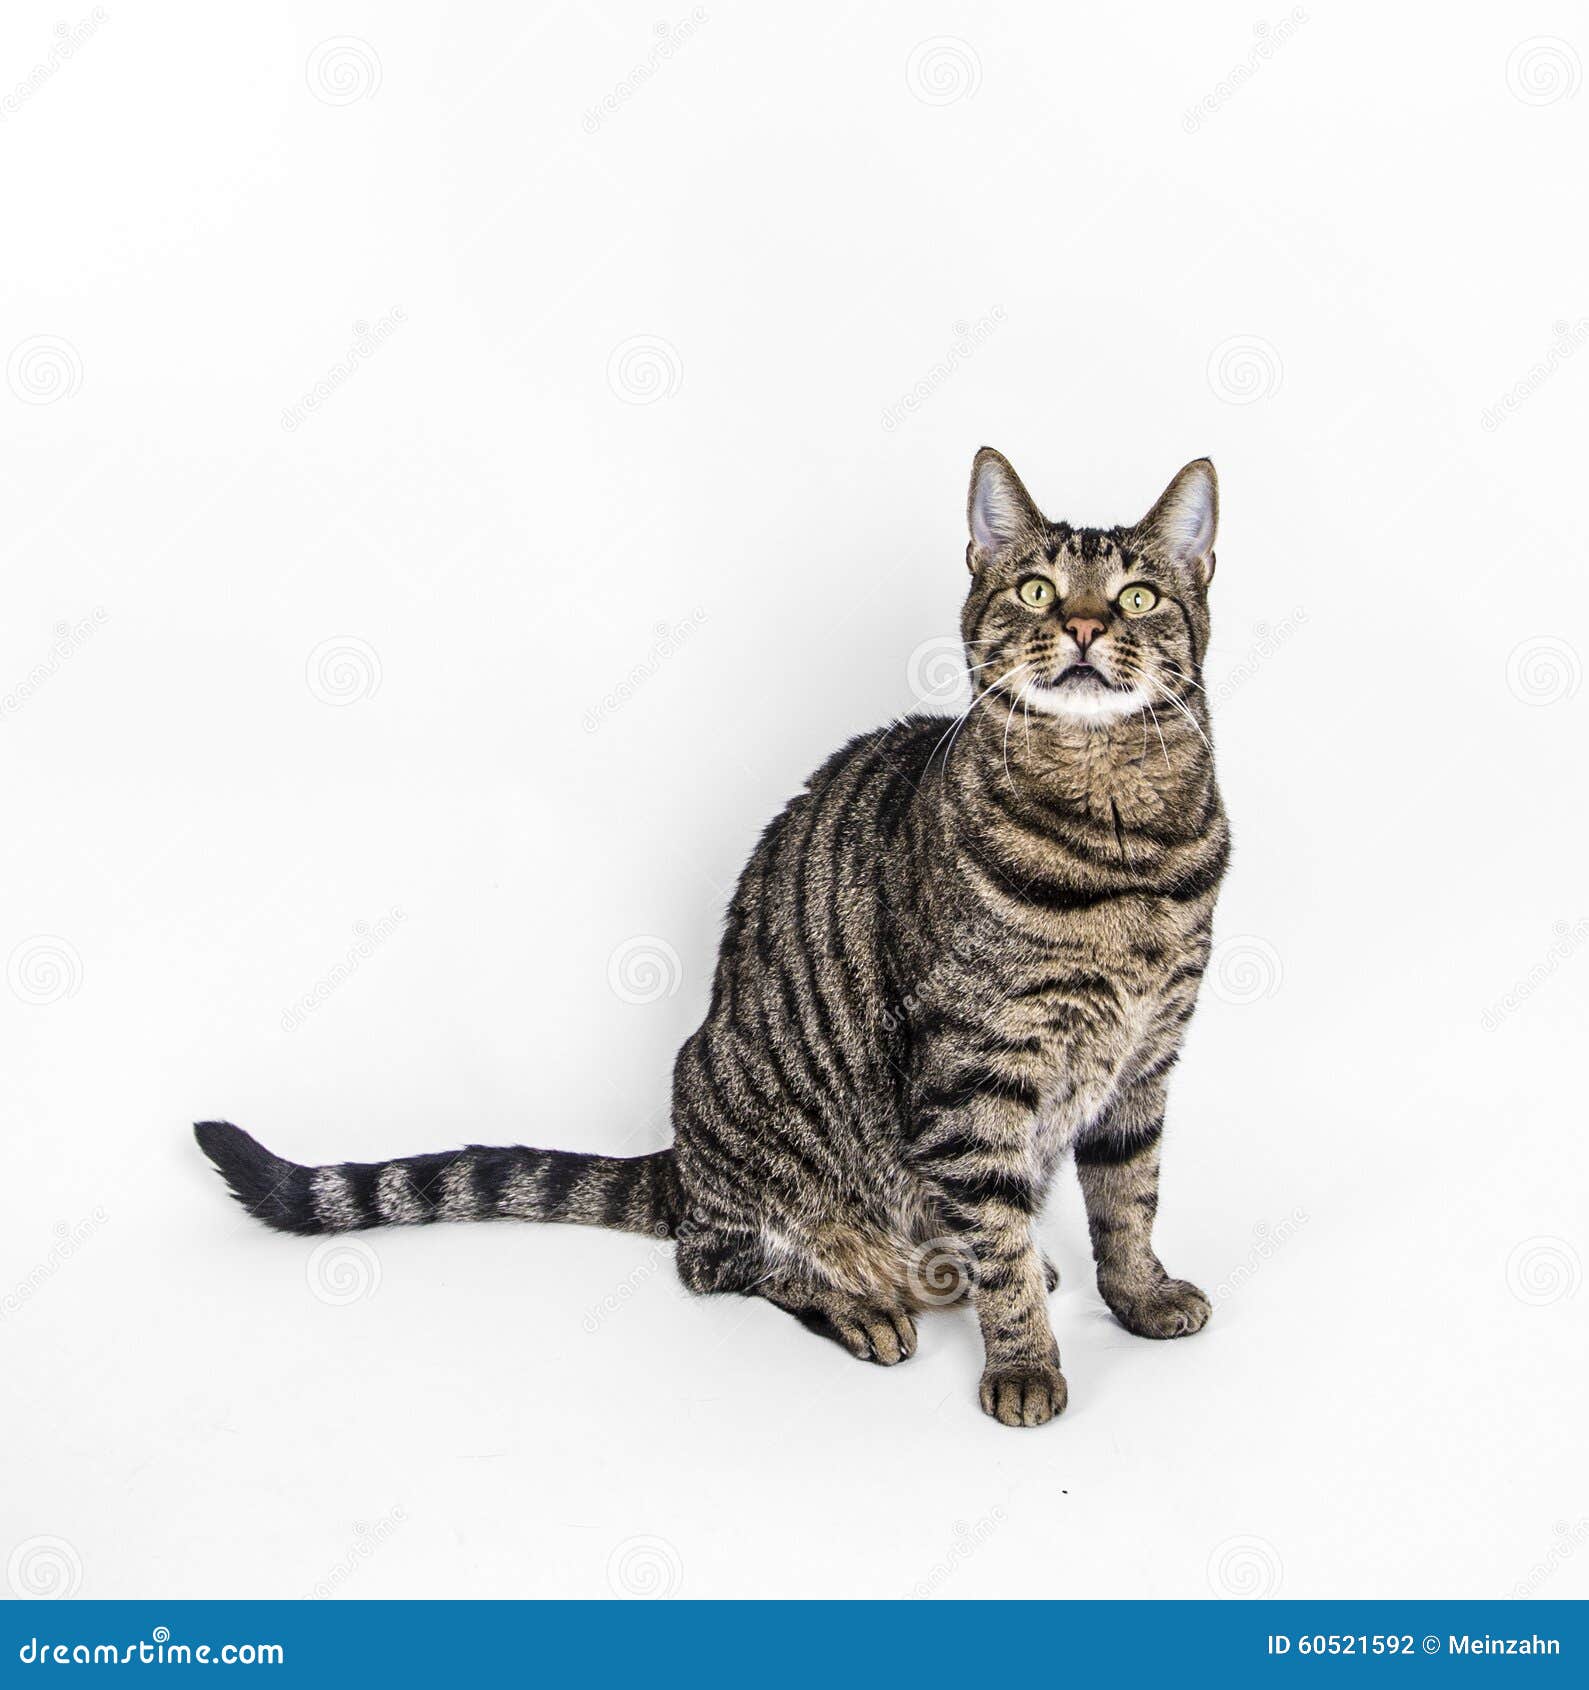 Cute cat  poses  in studio stock photo Image of studio 